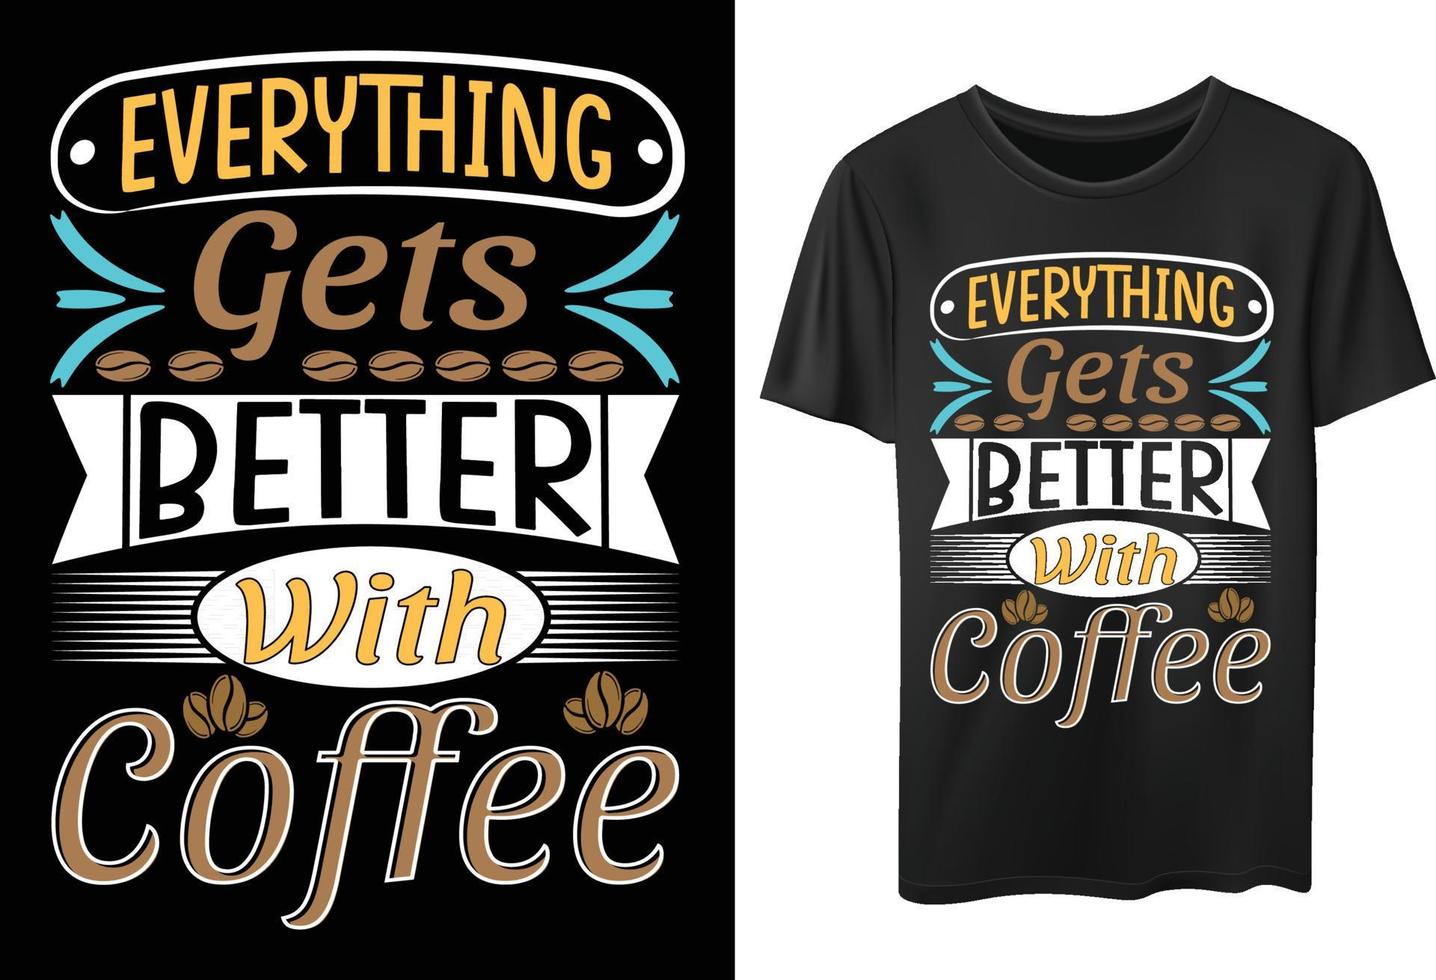 premium kaffetypografi t-shirtdesign för kaffeälskare vektor